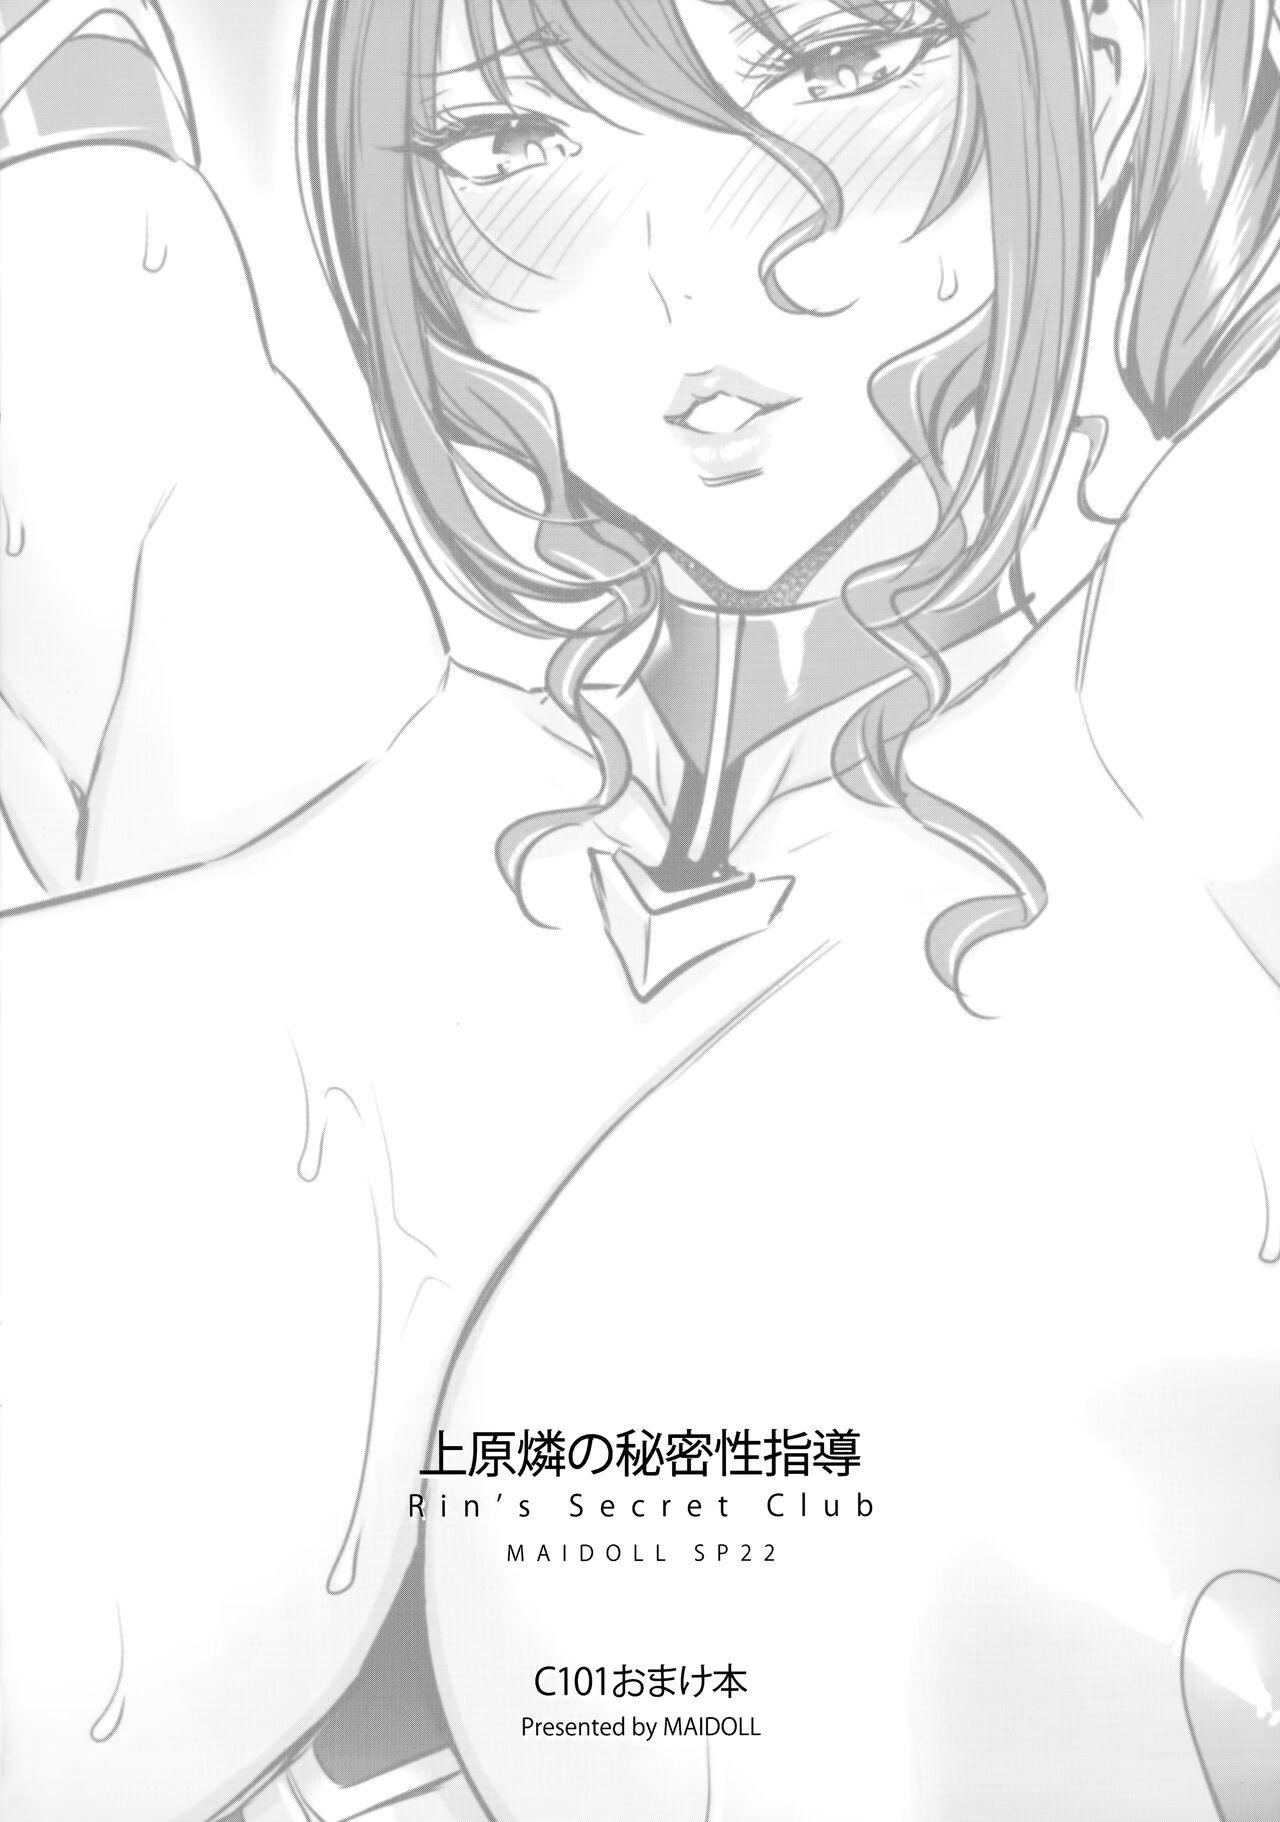 Uehara Rin no Himitsu Seishidou - Rin's Secret Club 8